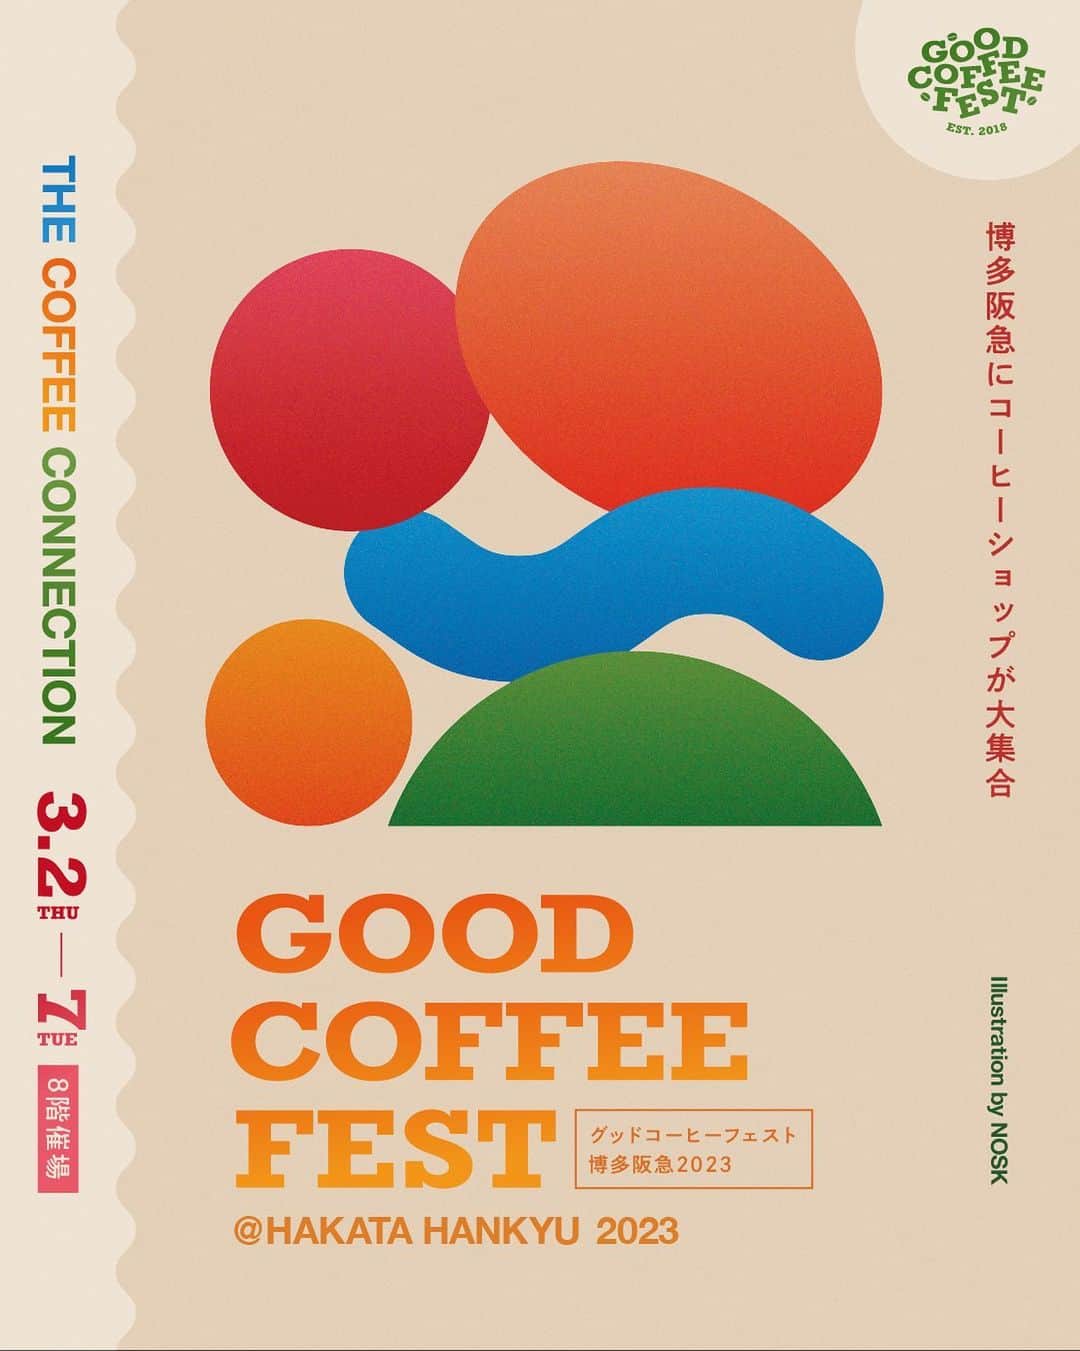 goodcoffeemeのインスタグラム：「. GOOD COFFEE FEST@HAKATA HANKYU 2023 spring  Good Coffee 監修のイベント「GOOD COFFEE FEST」 2023年初のイベントは福岡・博多での開催です。会場は福岡・博多阪急「8F 催場」で、期間は3月2日(木)〜3月7日(火)までの6日間です。  今回のイベントテーマは「THE COFFEE CONNECTION」 〜〜〜 つながるコーヒー。 国内ではほとんど生産されず、決して必要ではないけれど生活にゆとりを与えてくれるコーヒー。 はるか彼方、海の向こうから渡ってきて、焙煎されて淹れられる。そうやって味わうことができる1杯のカップは "From seed to cup" の考えのもと、関わるすべての人が味に影響を与える大きなコネクションによって成り立ってます。 コーヒーは1本の木からカップへ、人は農園からロースター、そしてカフェへとつながっていく。 1杯のカップからはじまる、さまざまなつながりの表現をテーマとして、東京・大阪・名古屋など各地で活躍するローカルロースターが博多阪急に集結します。 〜〜〜  日本全国から集まる個性豊かなロースターが一同に会する、GOOD COFFEE FEST 2023 springの出店ショップも公開します！  ＜#GCF 2023 spring 出店ショップ＞ ・COFFEE TRUNK COFFEE／愛知 (@trunkcoffee) AKITO COFFEE／山梨 (@akitocoffee) COFFEE SUPREME／東京 (@coffee_supreme_jpn) ETHICUS coffee roasters／静岡 (@ethicus.jp) GLITCH COFFEE & ROASTERS／東京 (@glitch_coffee) IFNi ROASTING & CO.／静岡 (@ifniroastingandco) KARIOMONS COFFEE ROASTER／長崎 (@kariomons_coffee) Kurasu Kyoto／京都 (@kurasujp) LIGHT UP COFFEE／東京 (@lightupcoffee) PASSAGE COFFEE／東京 (@passagecoffee) PHILOCOFFEA／千葉 (@philocoffea) Raw Sugar Roast／東京 (@rawsugar_roast) TAOCA COFFEE／兵庫 (@taocacoffee) TAKAMURA COFFEE ROASTERS／大阪 (@takamura_coffee_roasters) warmth／群馬 (@warmth_takasaki)  ・OTHER COFFEE TIME WITH VAUGHAN (@coffee_twv) ORIGAMI／岐阜 (@origami_cup) PRANA CHAI／オーストラリア (@pranachaijp) SR coffee & ice cream／東京 (@sr_coffee_icecream_jimbocho) CURRY A WOMAN／福岡(@_curryawoman_) .」